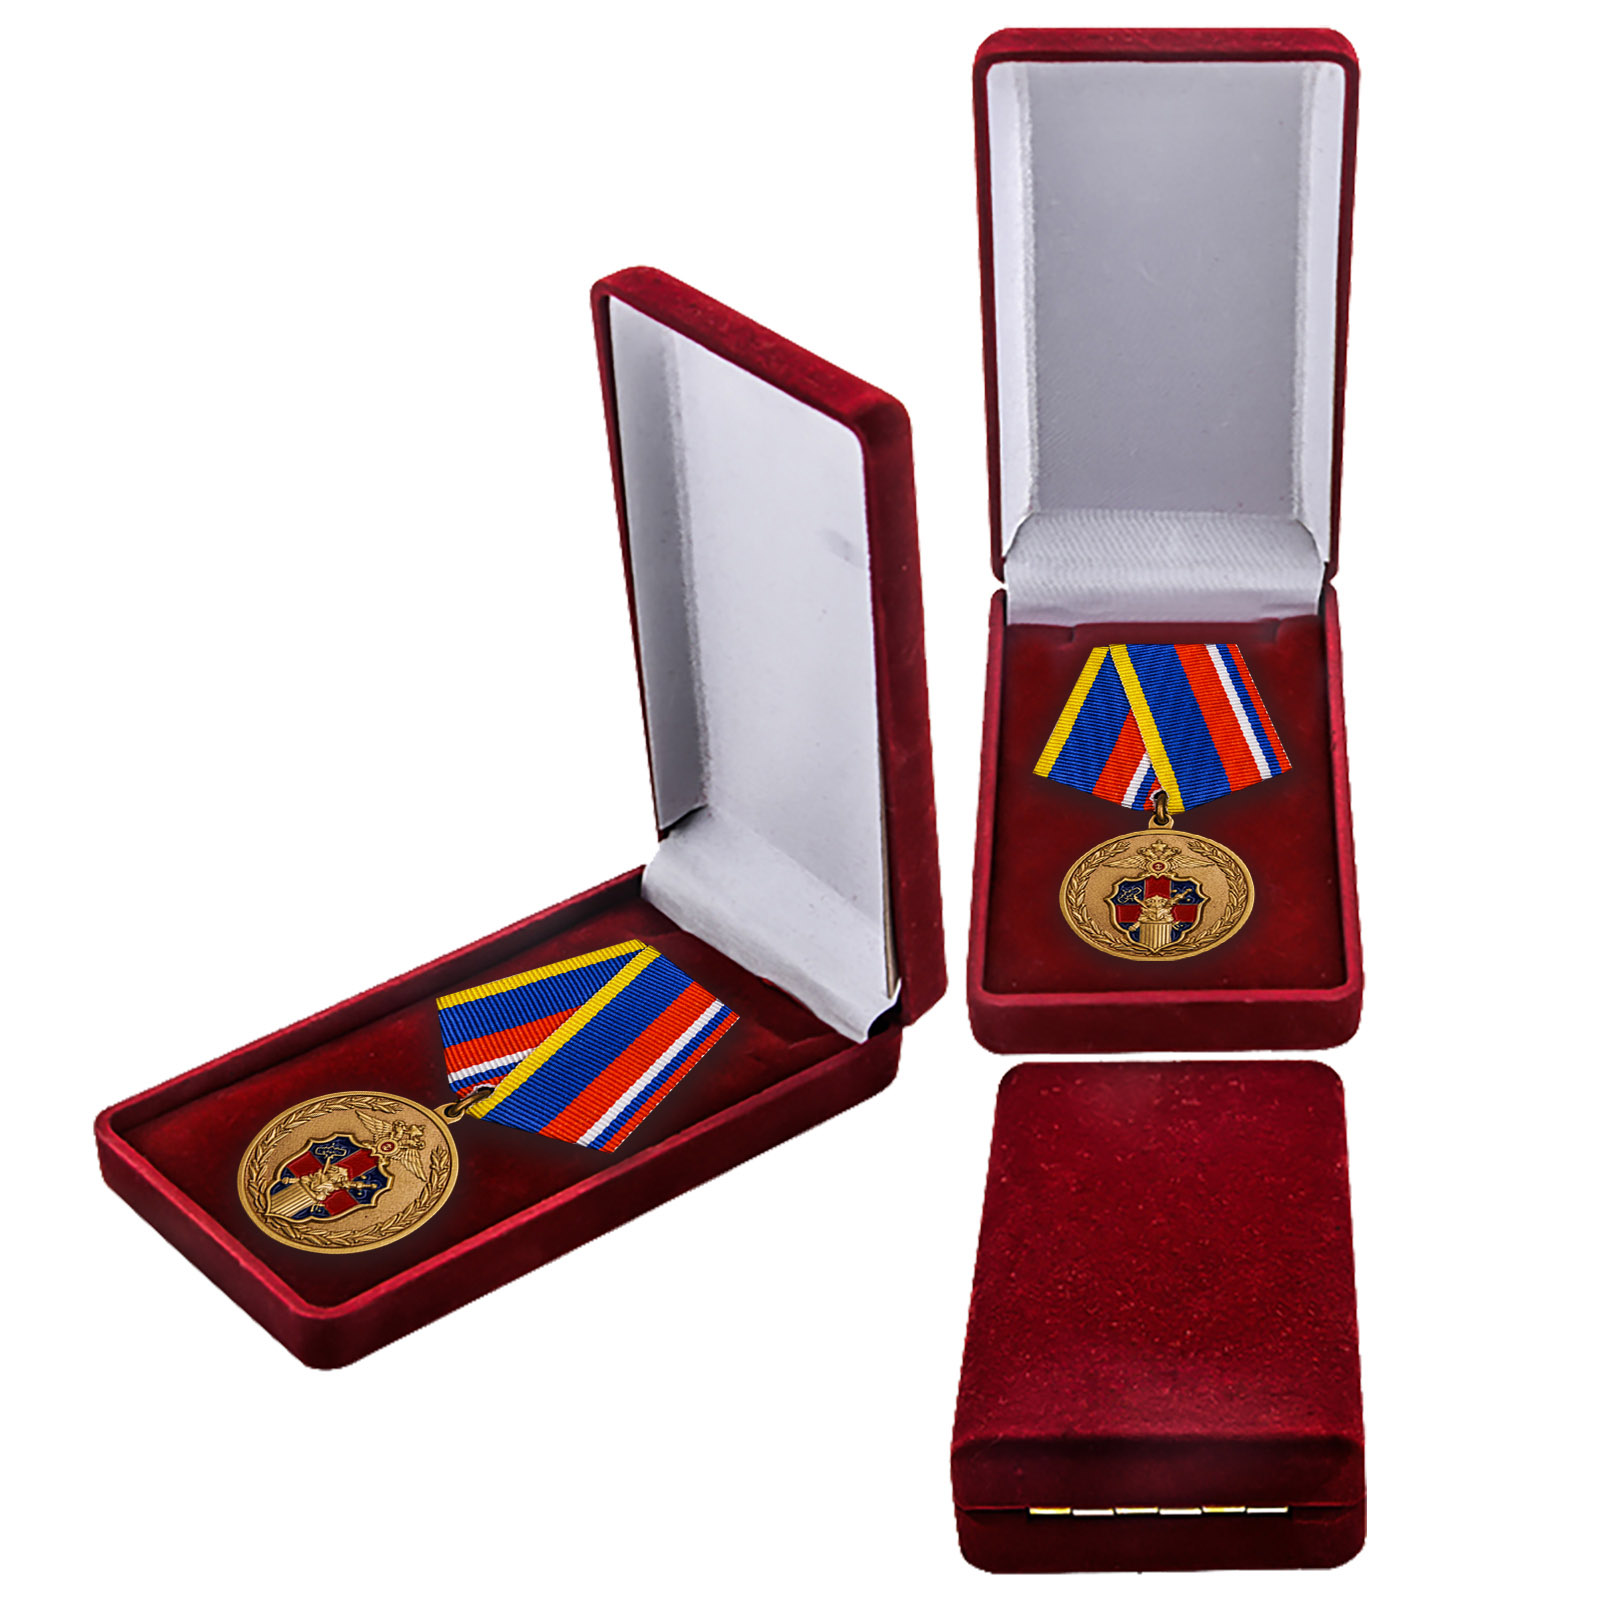 Купить медаль 100 лет Службе тыла МВД России в подарок мужу